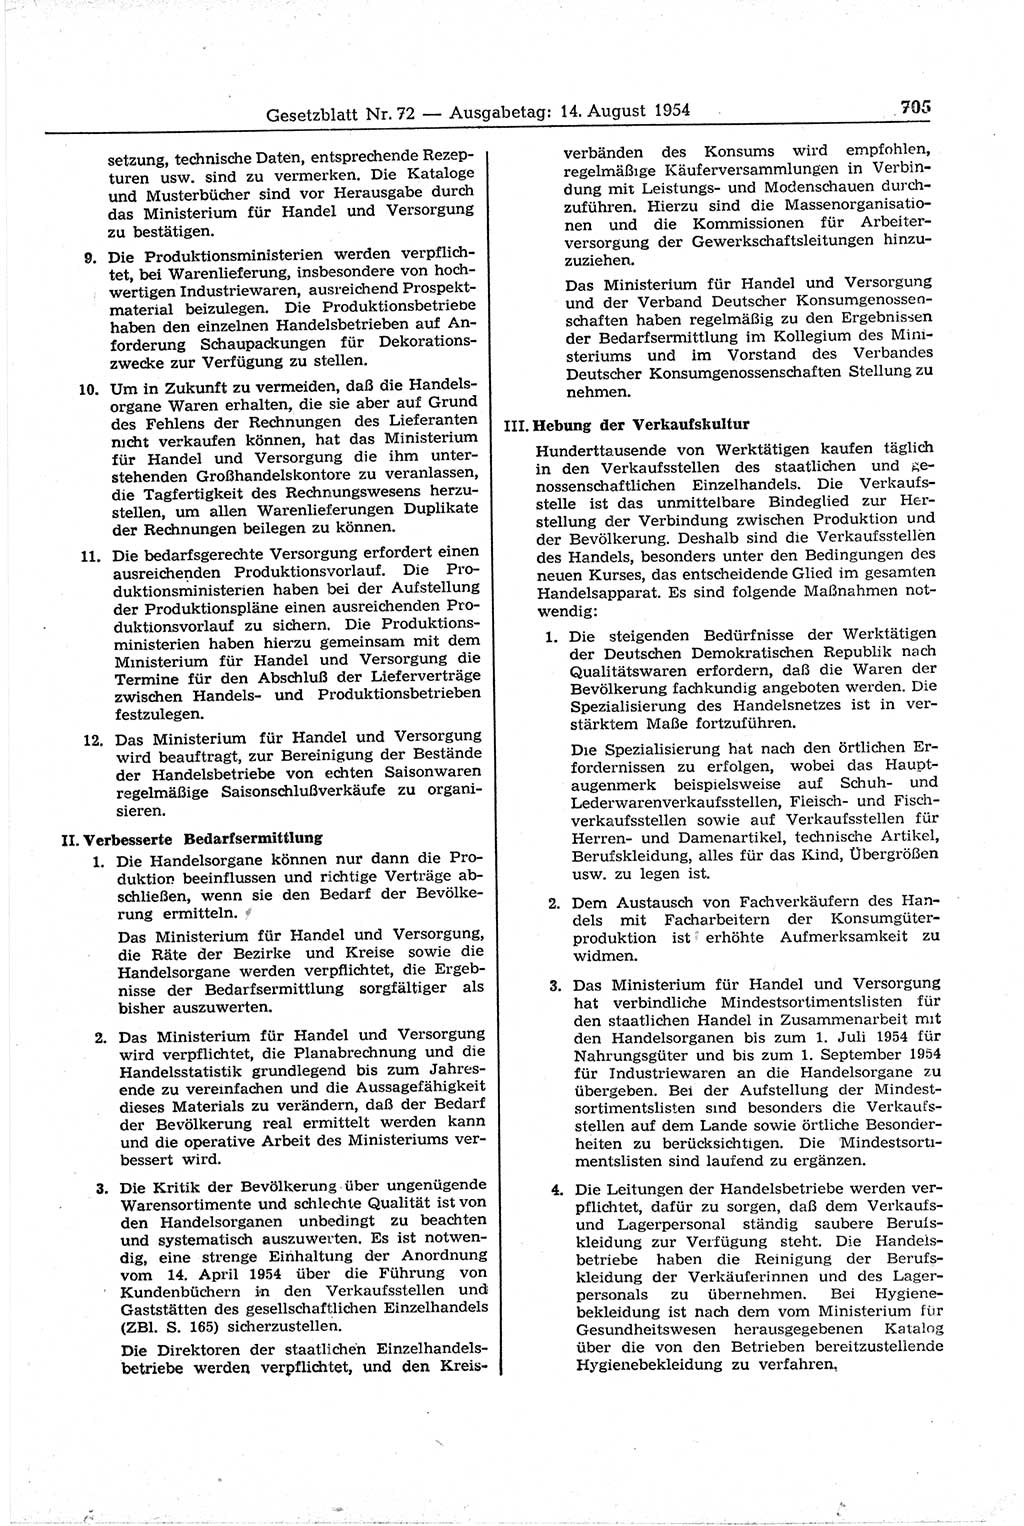 Gesetzblatt (GBl.) der Deutschen Demokratischen Republik (DDR) 1954, Seite 705 (GBl. DDR 1954, S. 705)